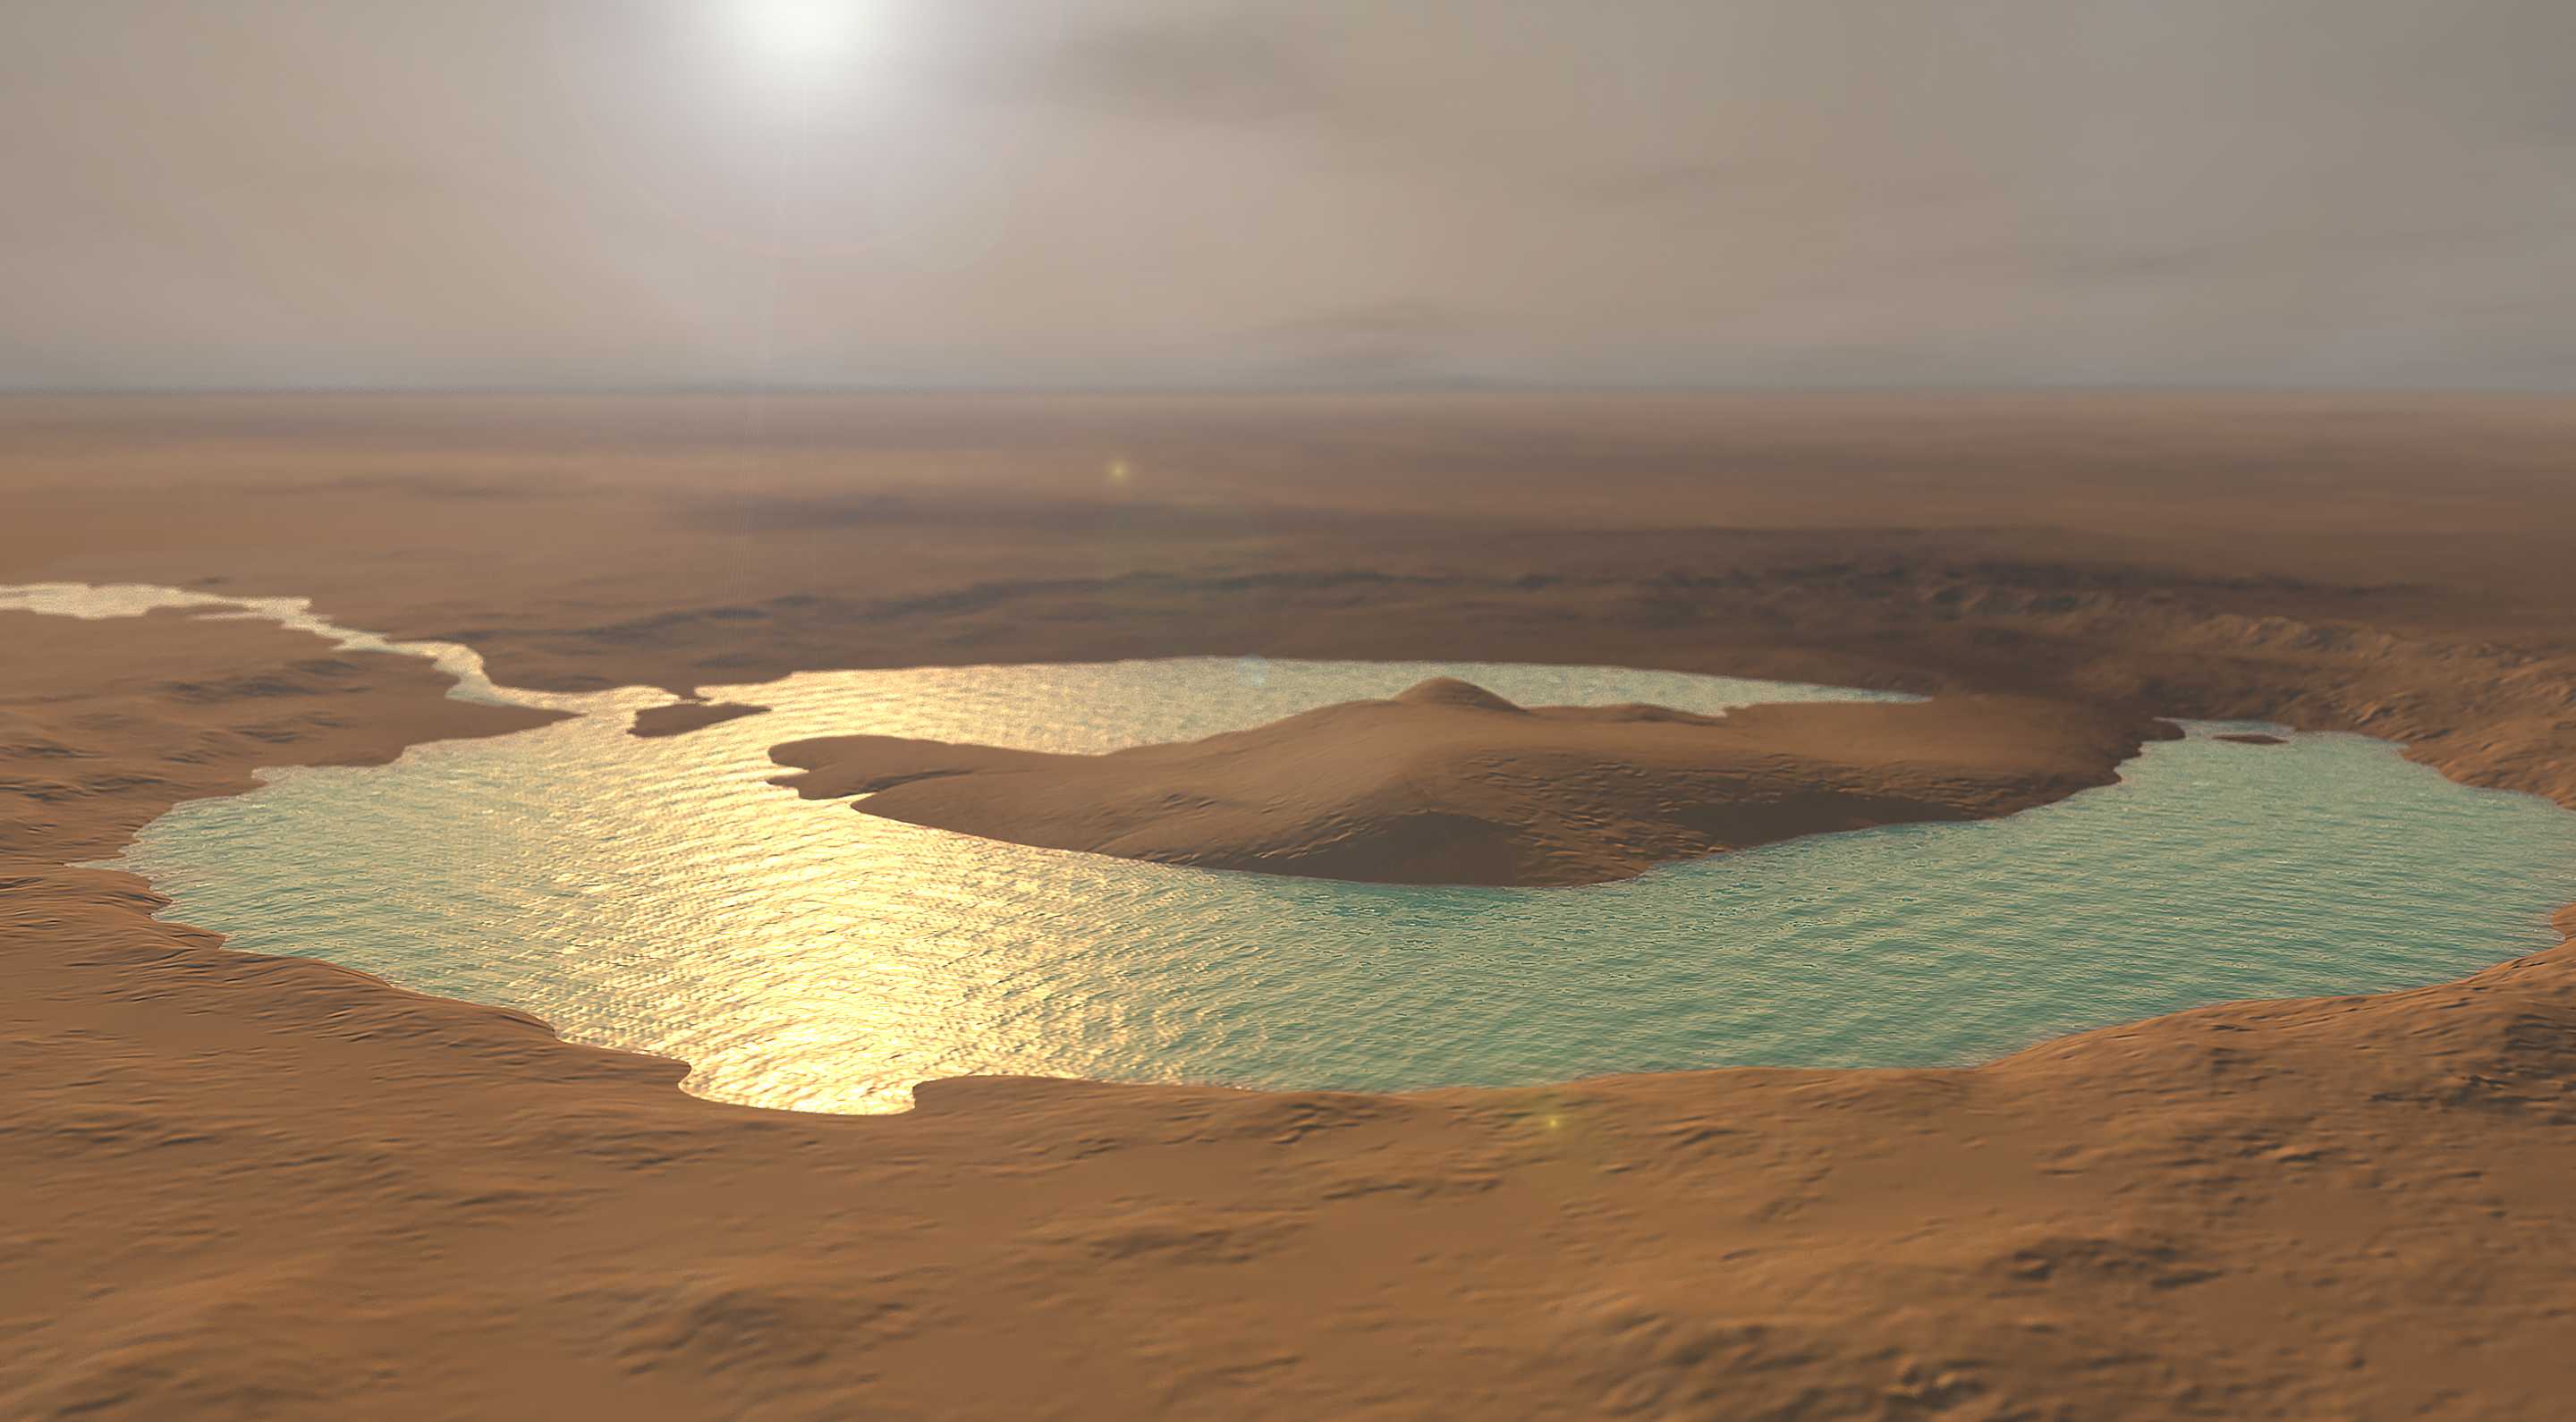 Астрономы изучили остатки древних озер на Марсе